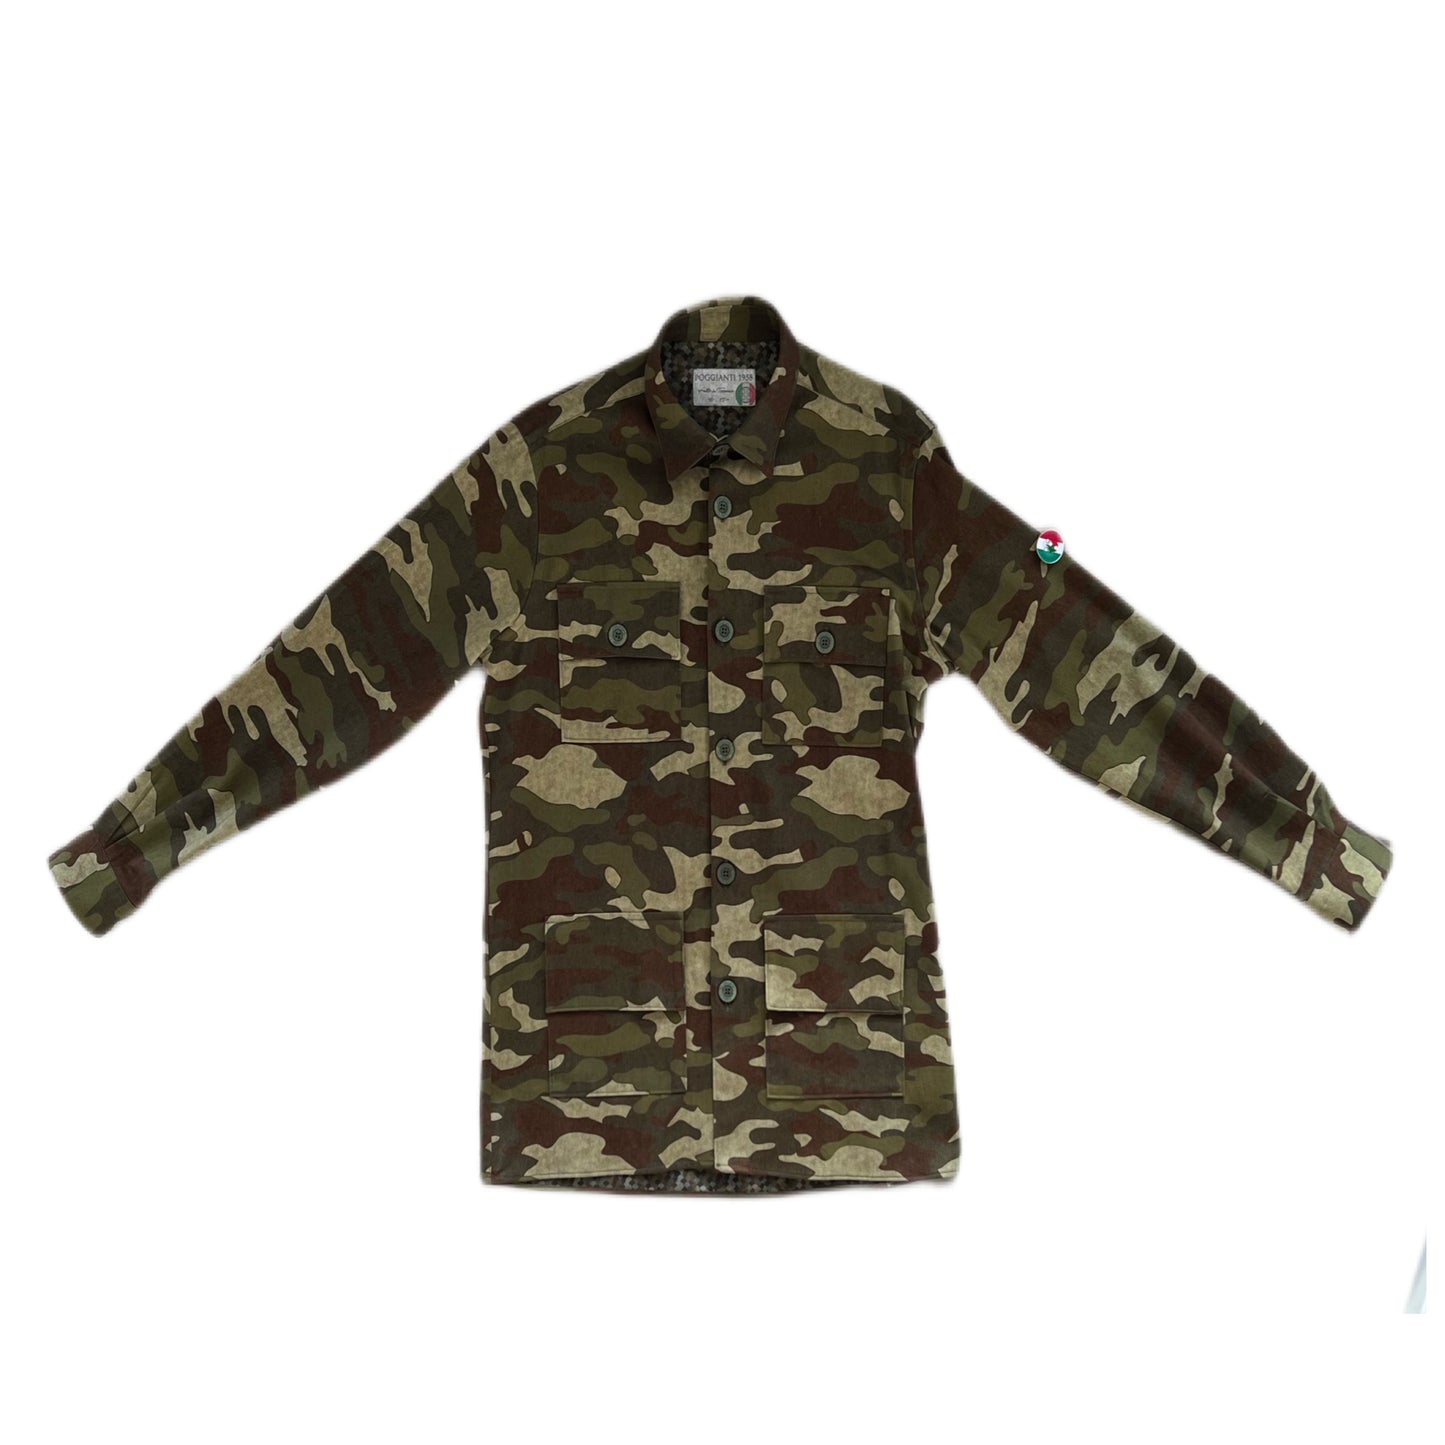 Poggianti 1958 - Shirt Jacket Montisi Camo Military